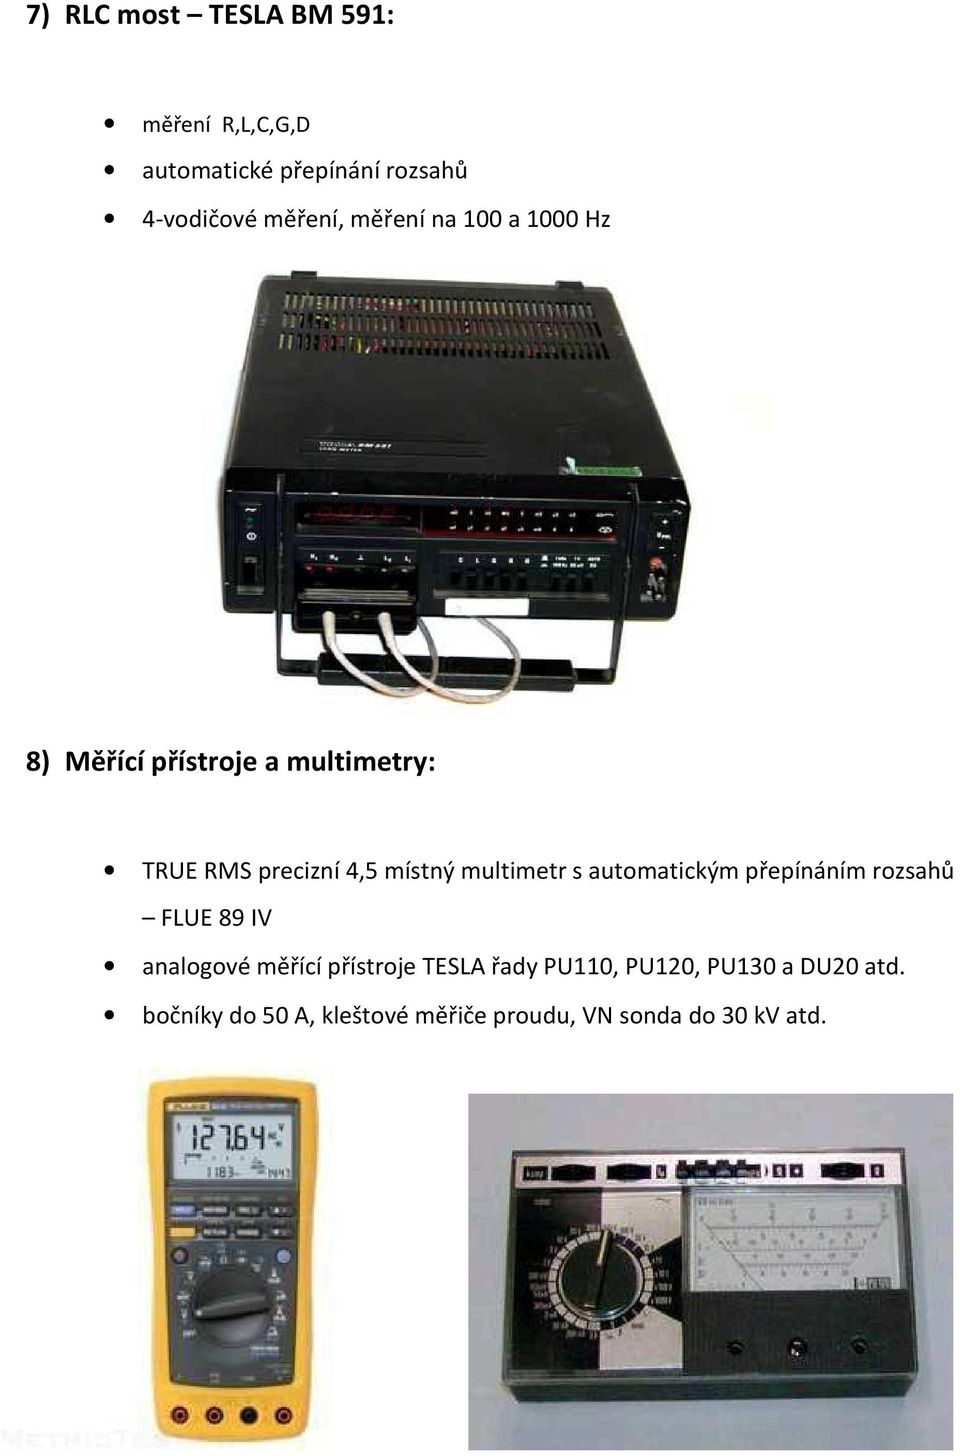 multimetr s automatickým přepínáním rozsahů FLUE 89 IV analogové měřící přístroje TESLA